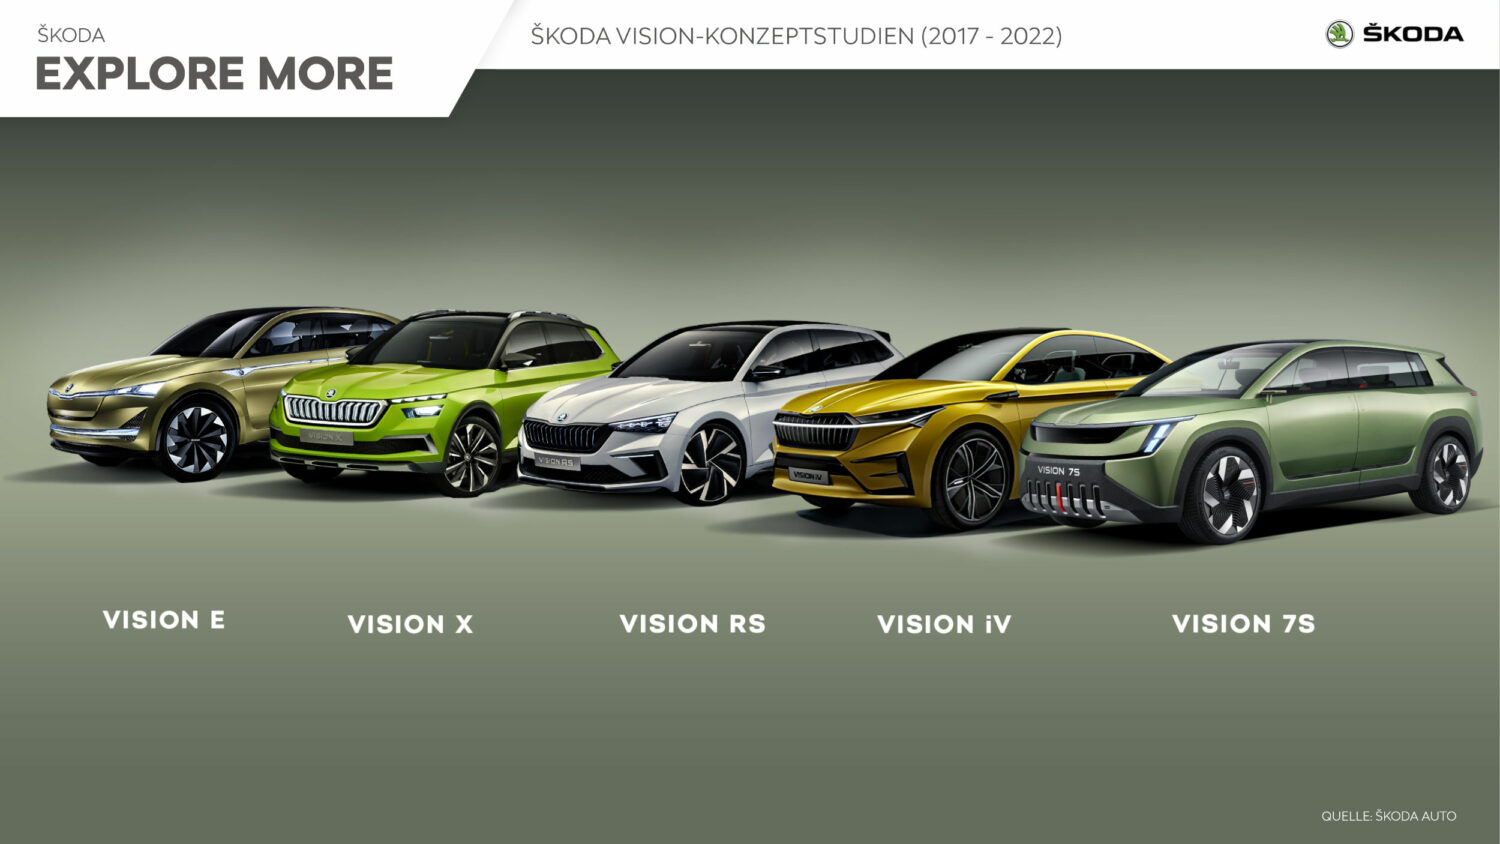 SKODA Concept Cars, Quelle: Skoda